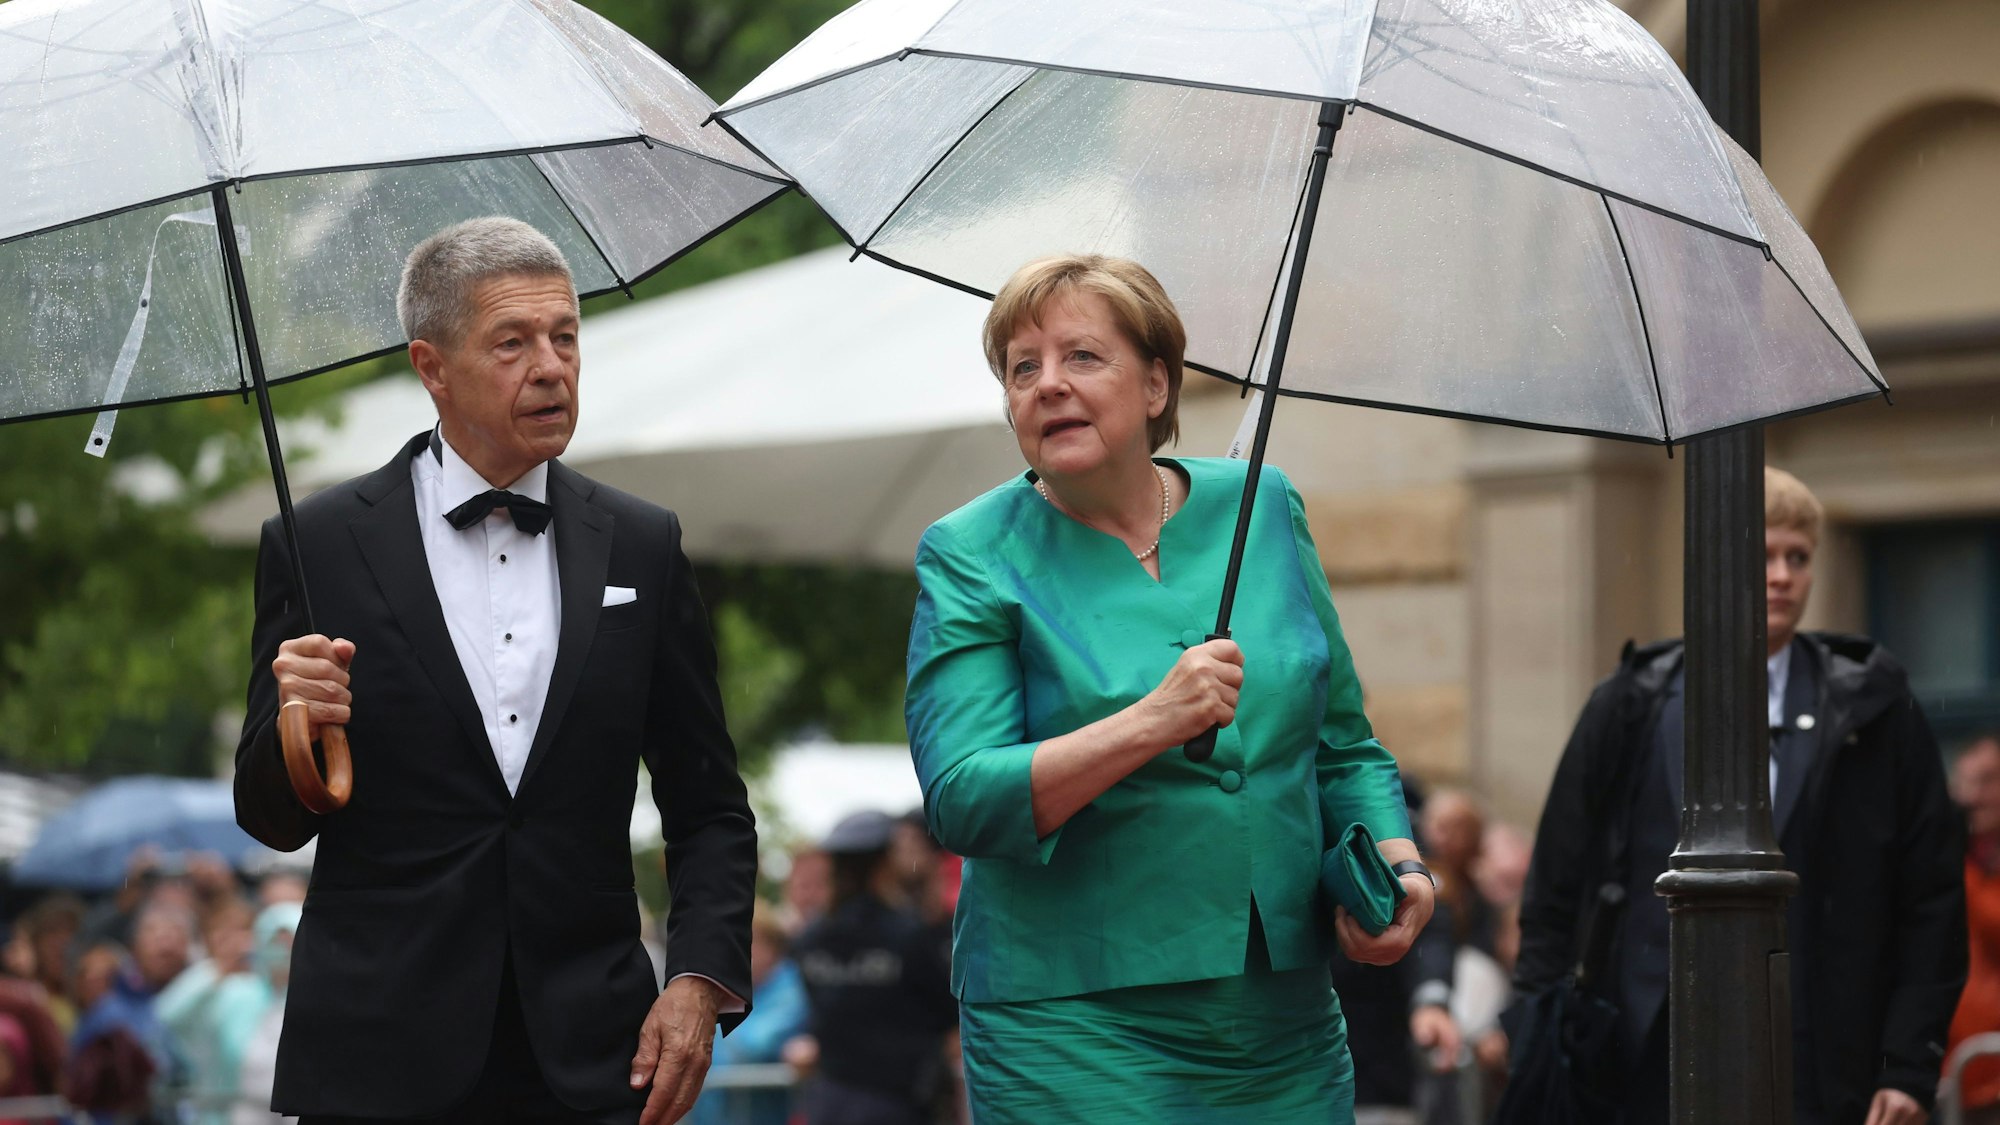 Bayern, Bayreuth: Ex-Bundeskanzlerin Angela Merkel (CDU) und Ehemann Joachim Sauer kommen mit Regenschirm zur Eröffnung der Richard-Wagner-Festspiele.